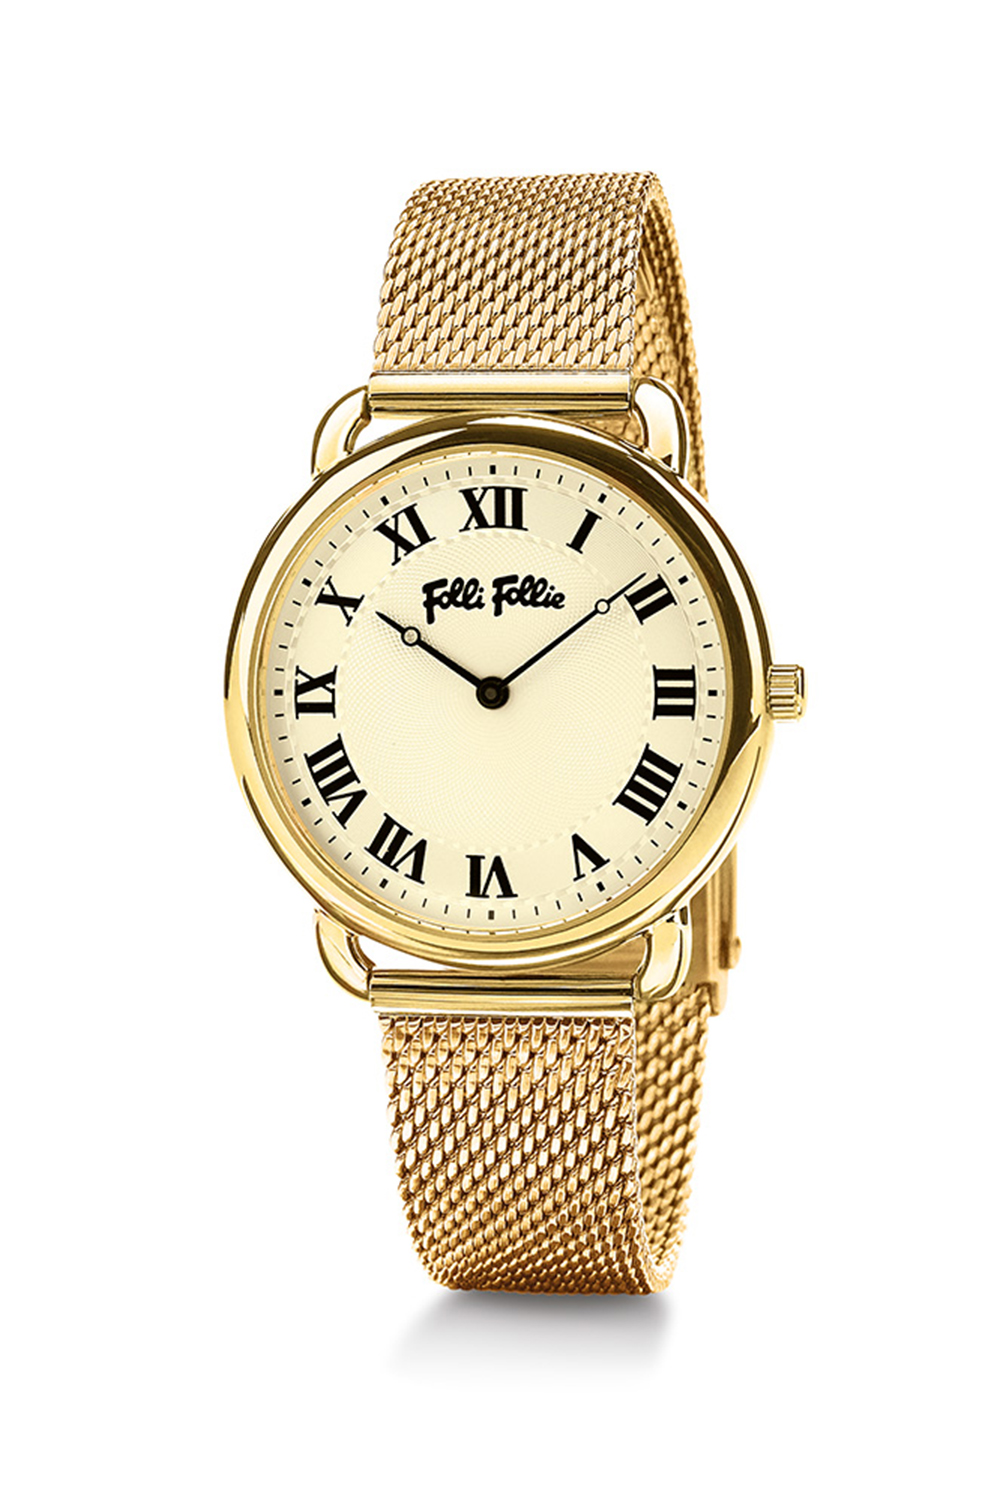 Γυναικεία/Αξεσουάρ/Ρολόγια/Μπρασελέ FOLLI FOLLIE - Γυναικείο ρολόι από ατσάλι FOLLI FOLLIE PERFECT MATCH χρυσό